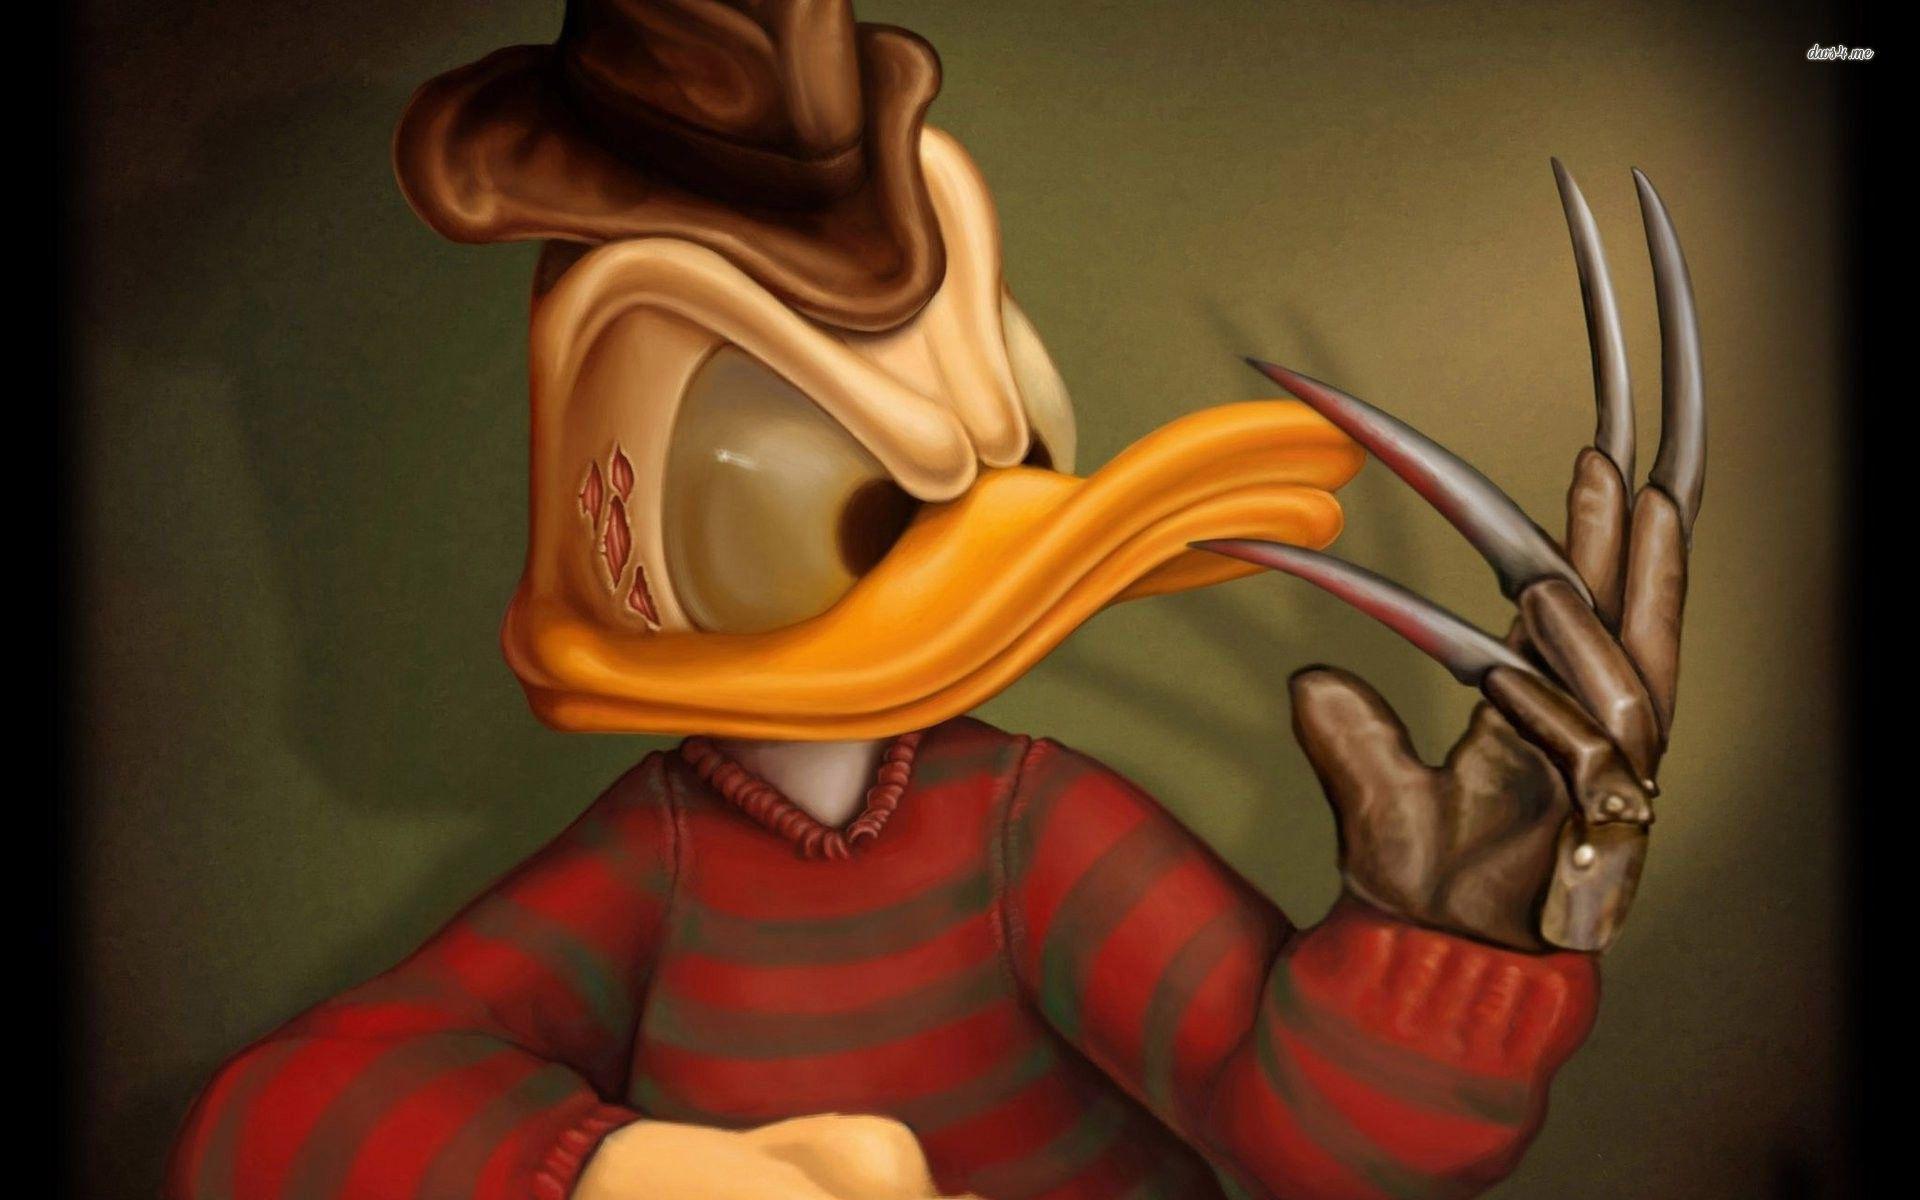 Donald duck as freddy krueger wallpaper. Wallpaper Wide HD